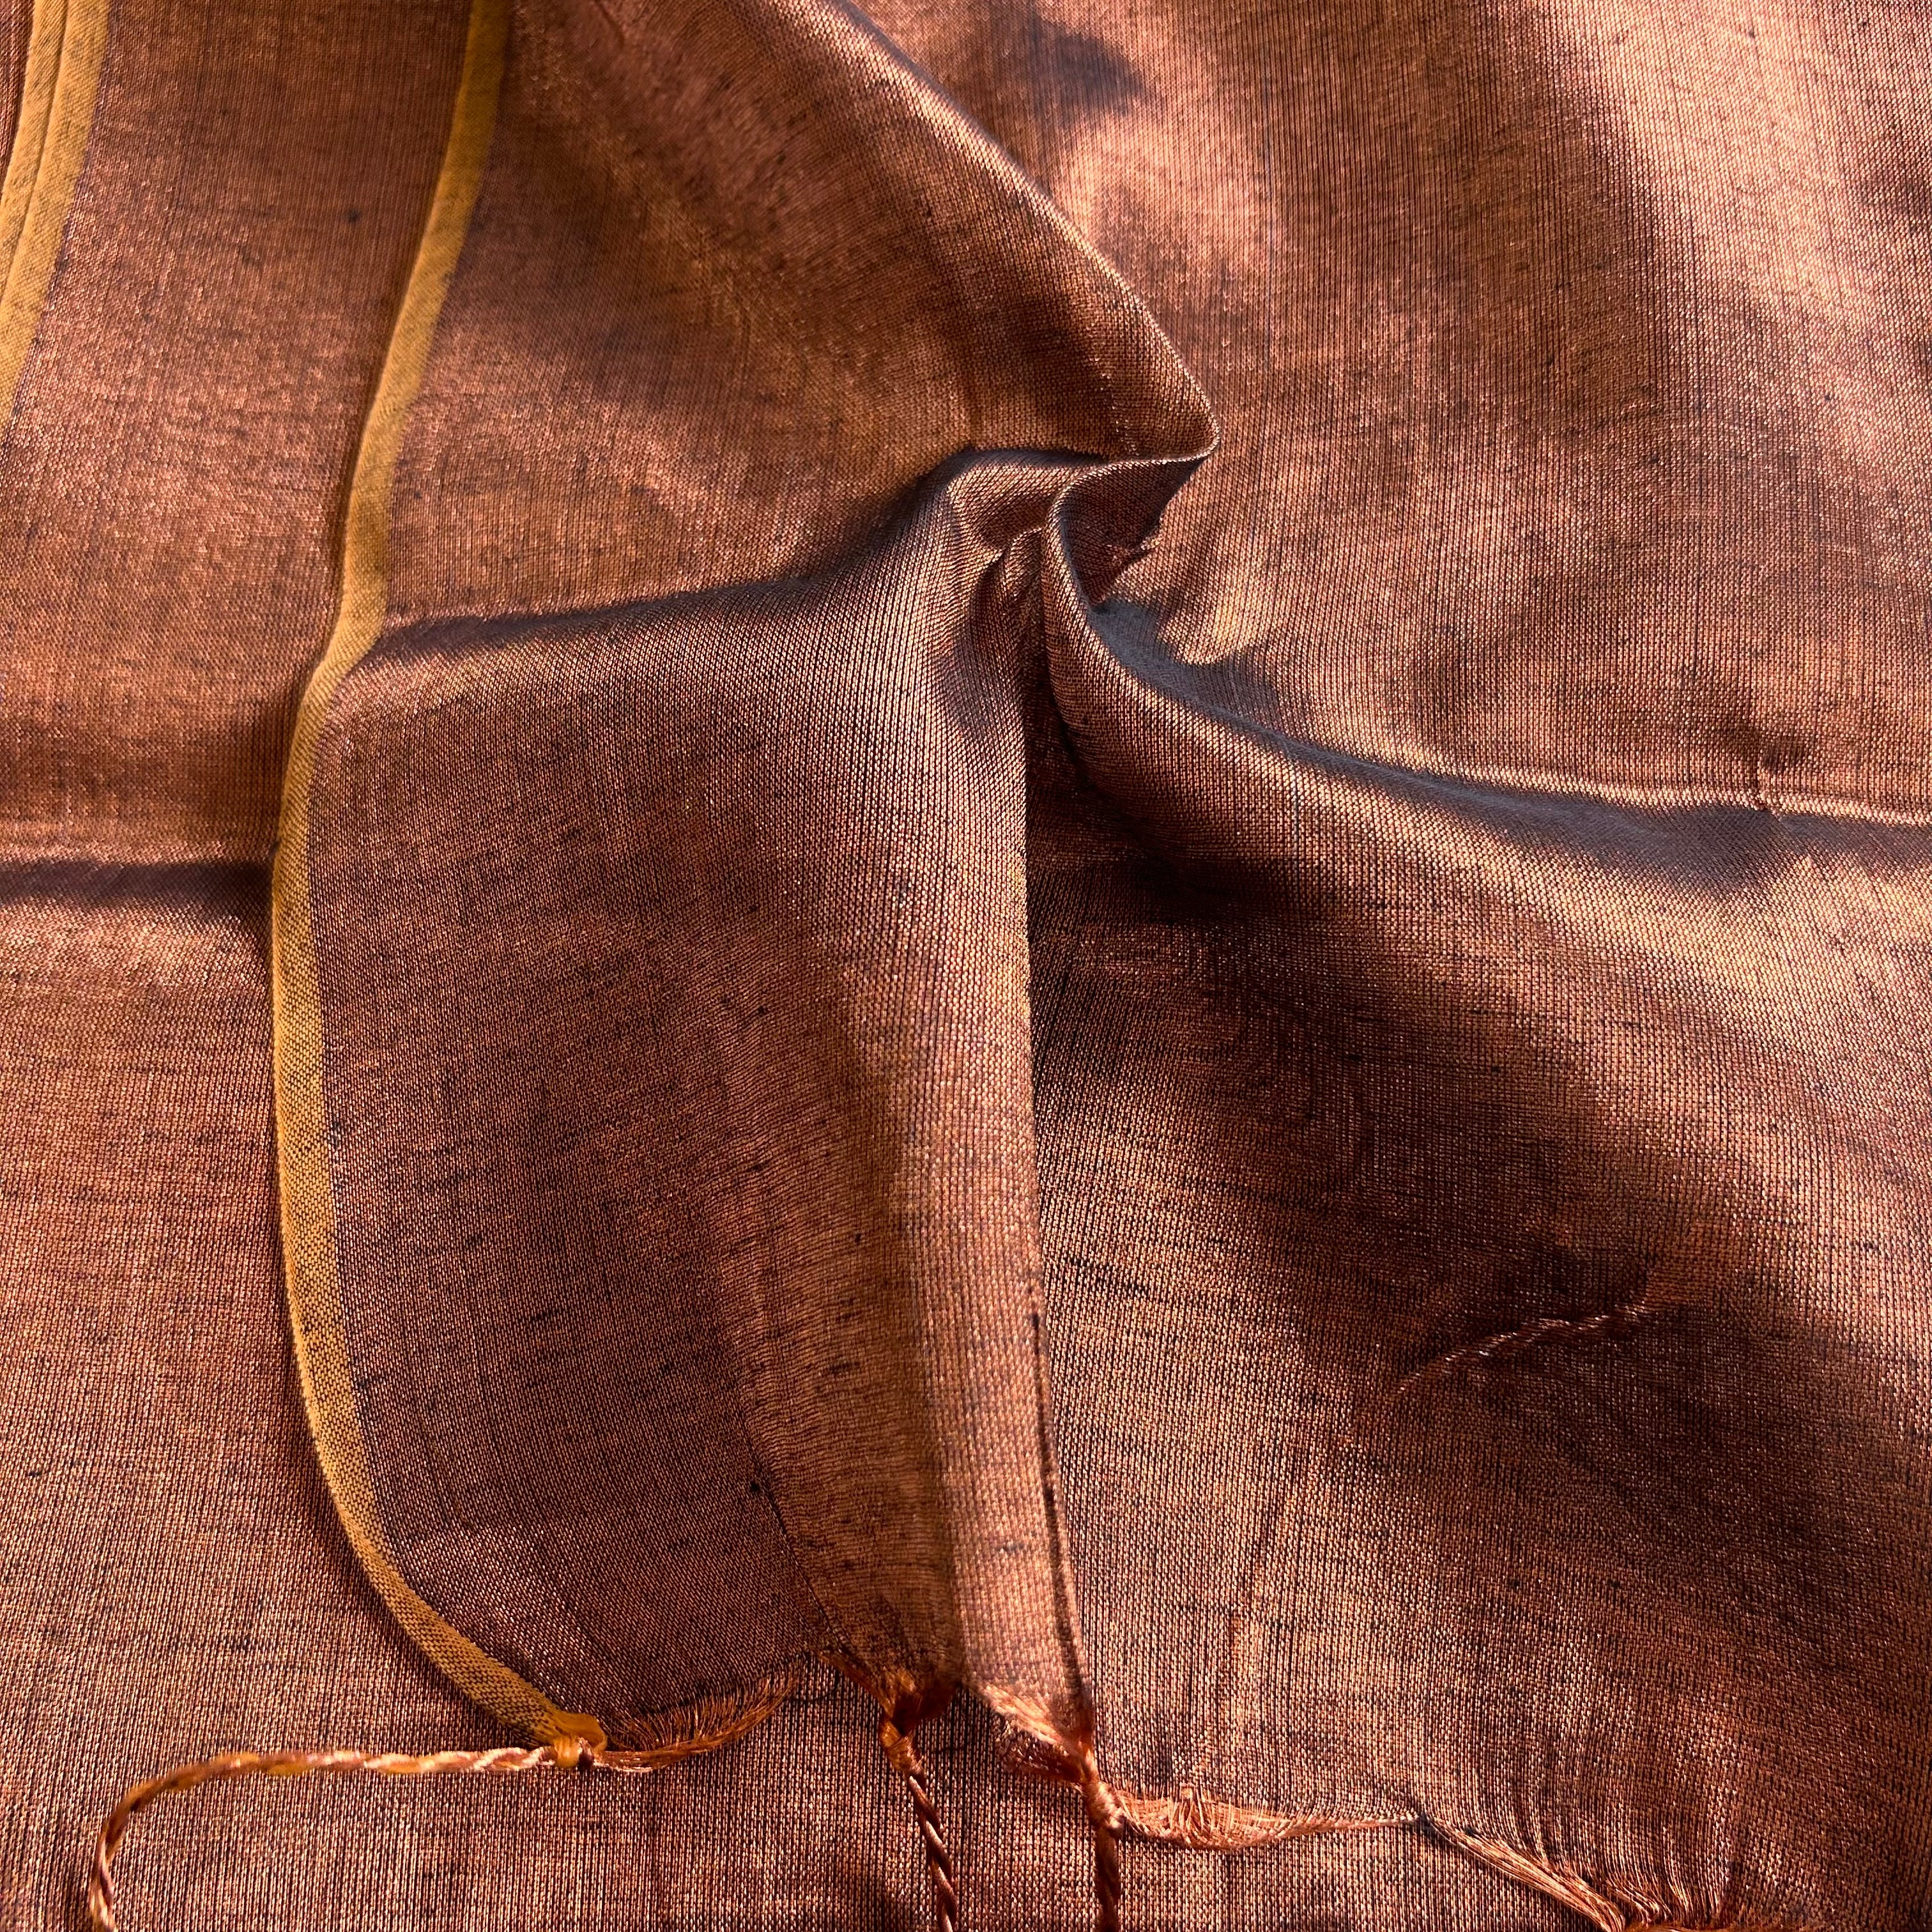 Sutisancha Copper Handloom Tissue Saree